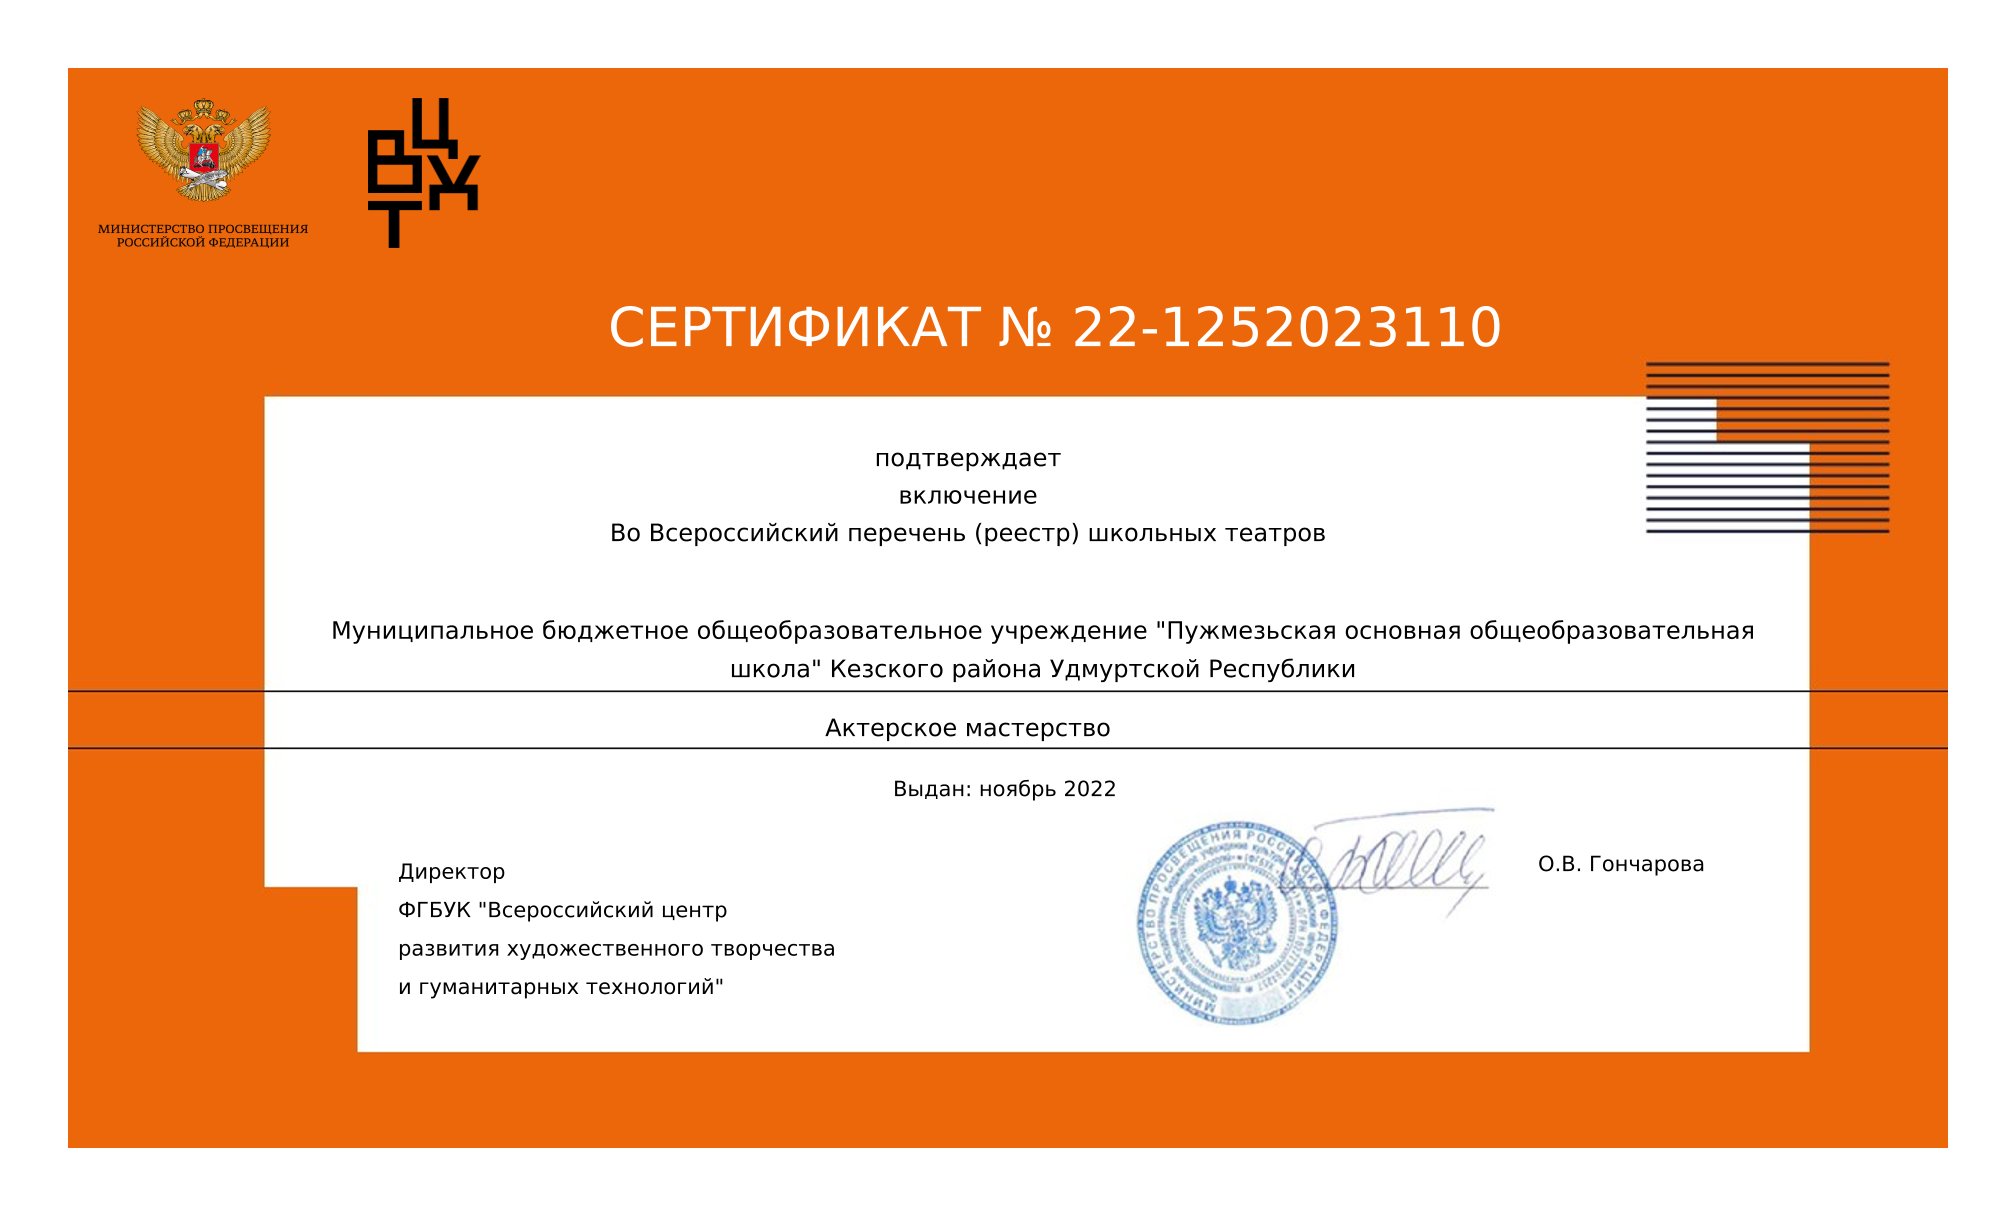 Сертификат о включении во Всероссийский перечень школьных театров